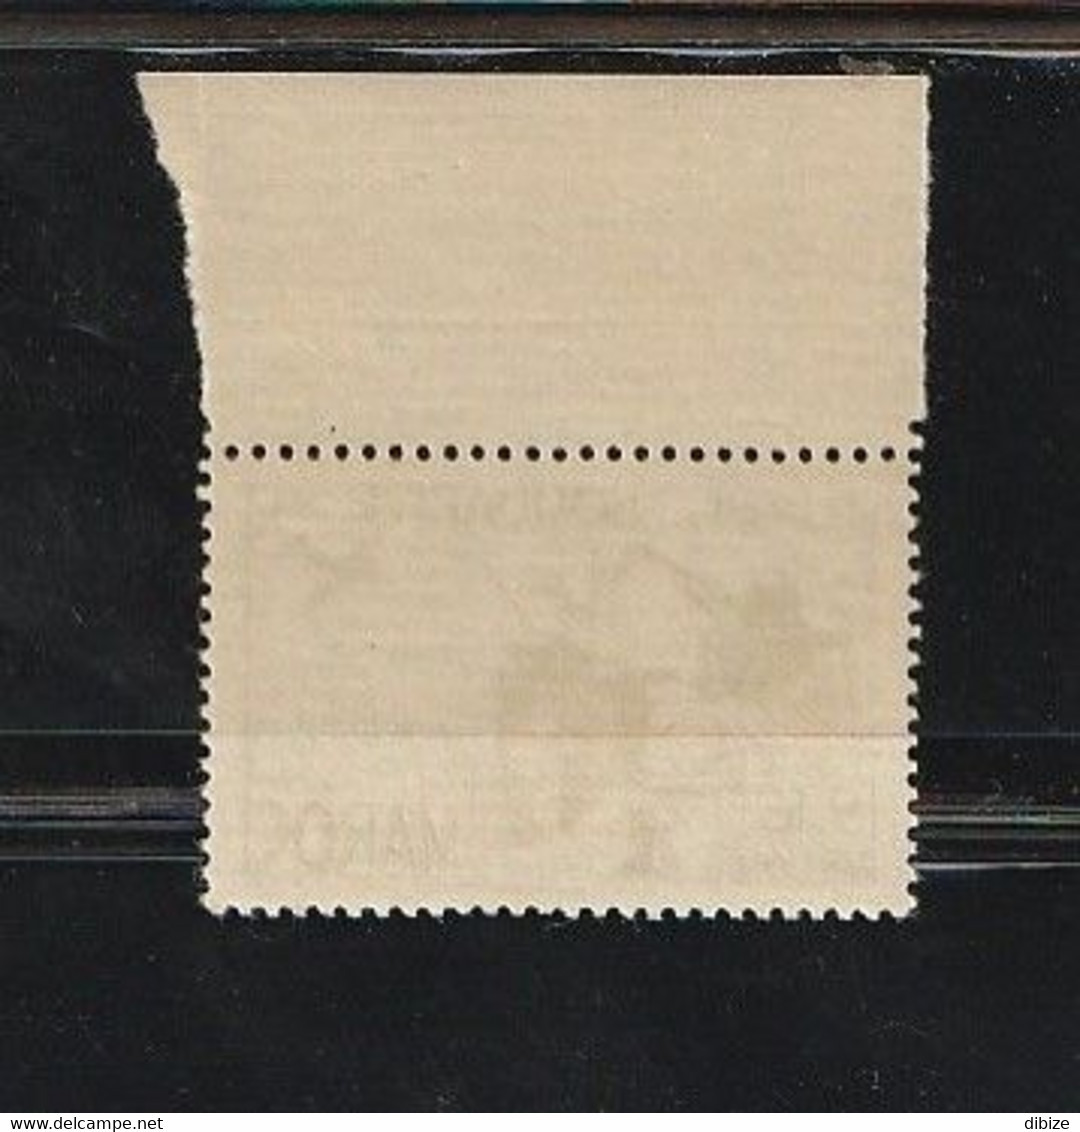 Maroc. Protectorat. Timbre. Poste Aérienne. Yvert & Tellier N° 65. 1948. Solidarité 1947. Ravitaillement. - Poste Aérienne